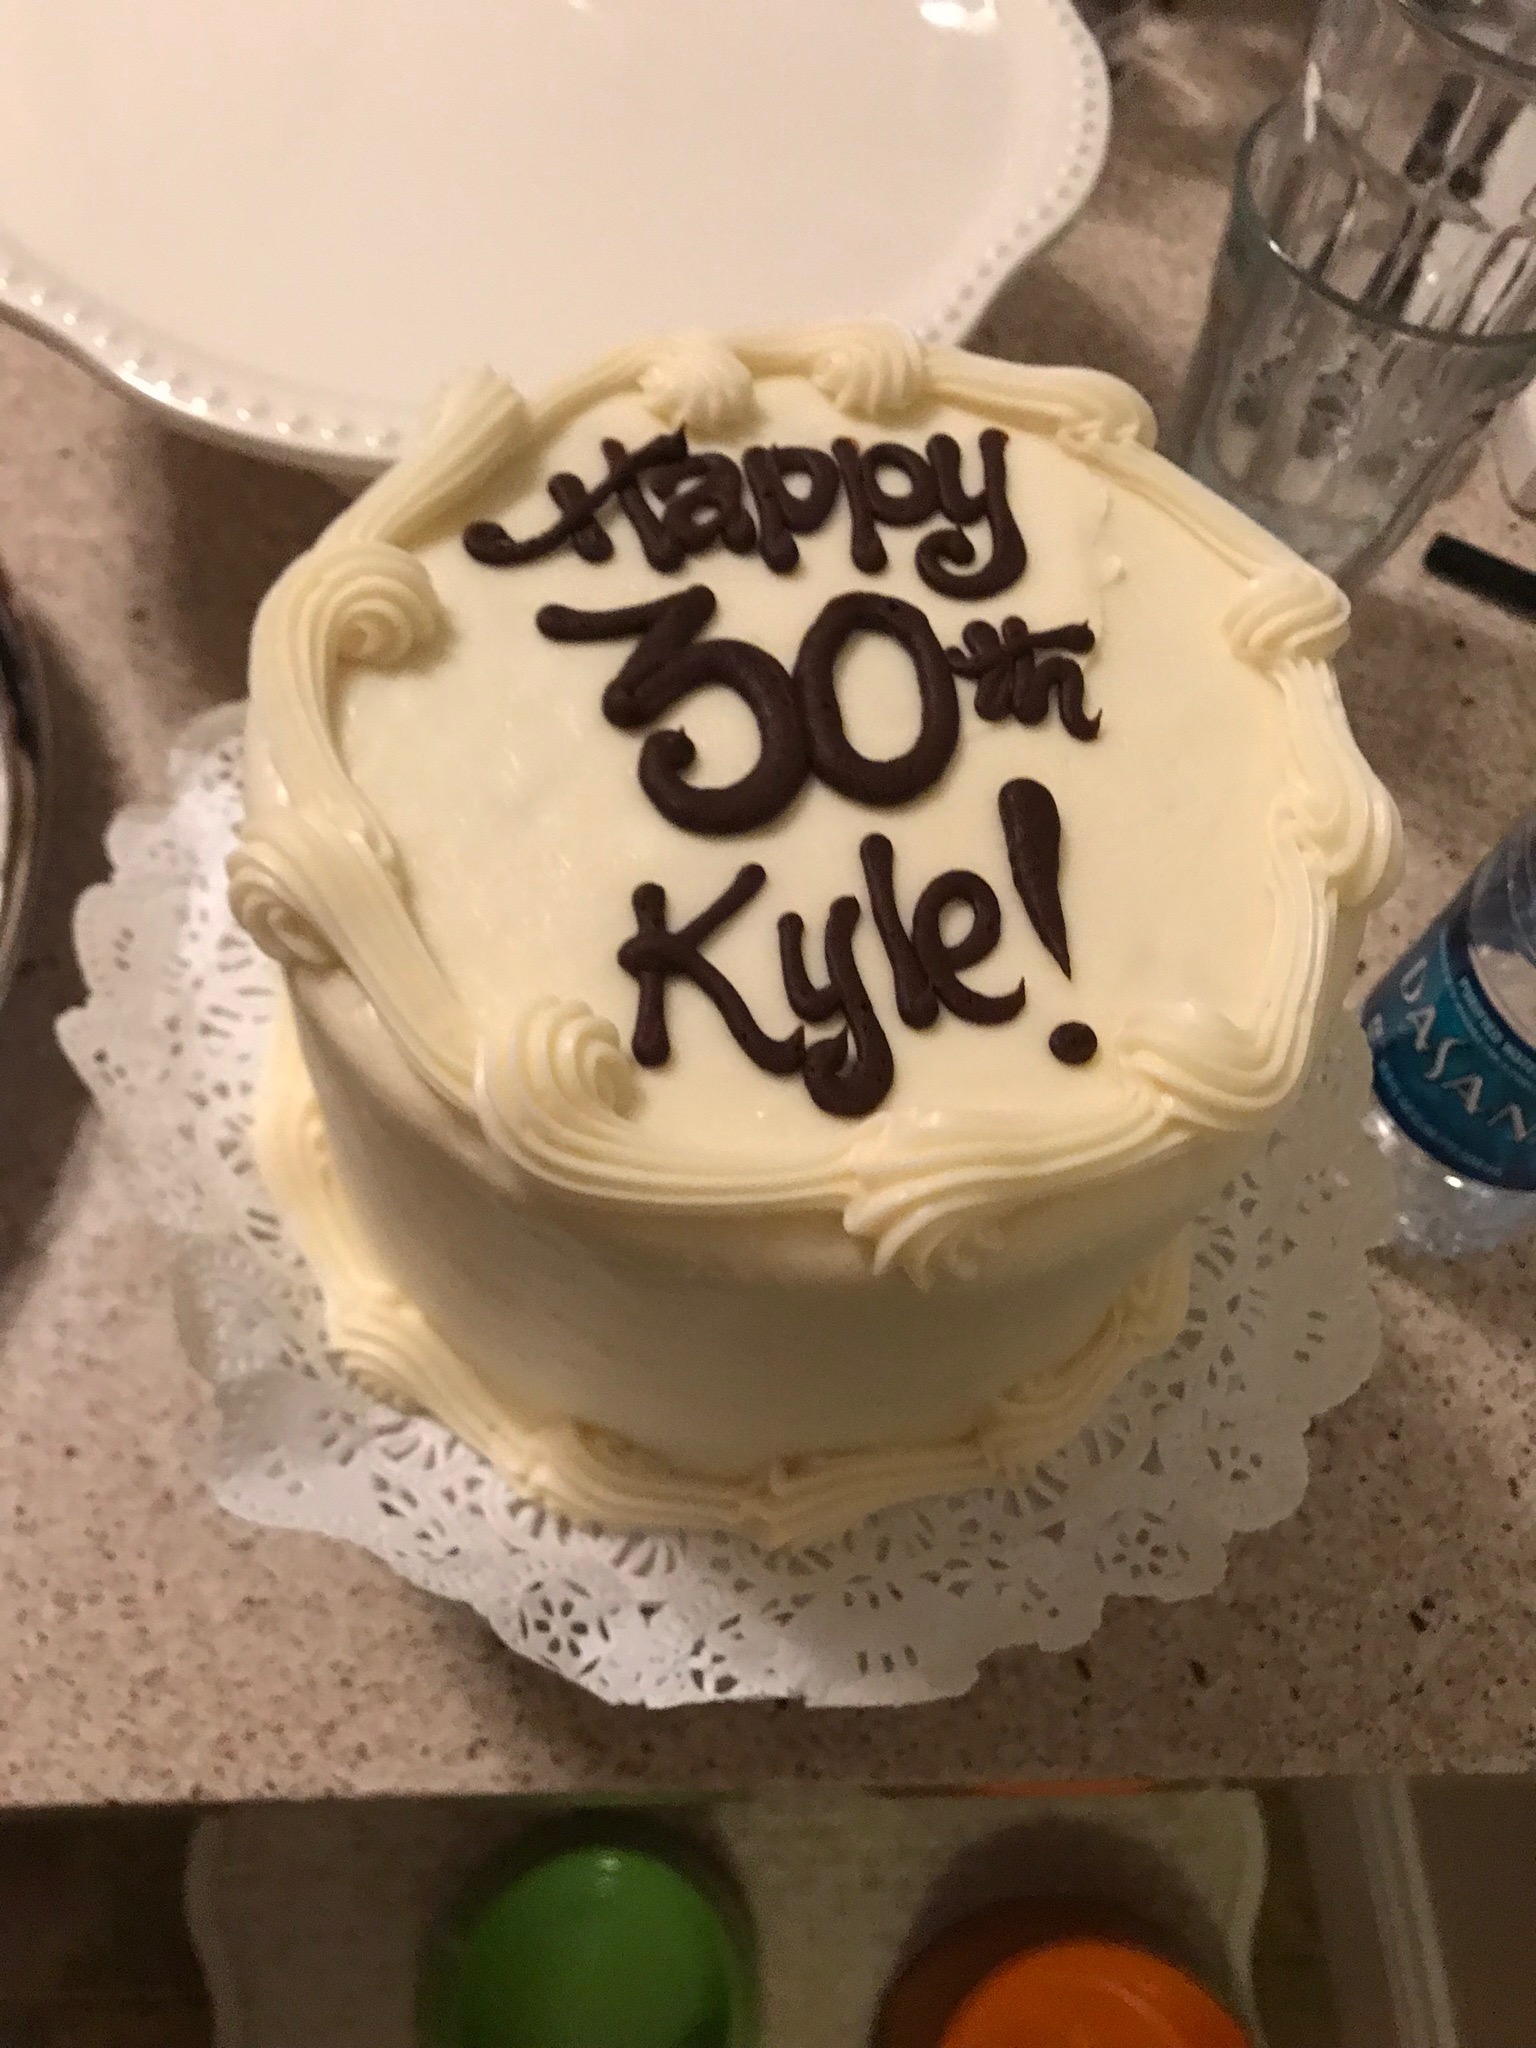 Kyle's cake unlit IMG_2963.jpg*.jpg